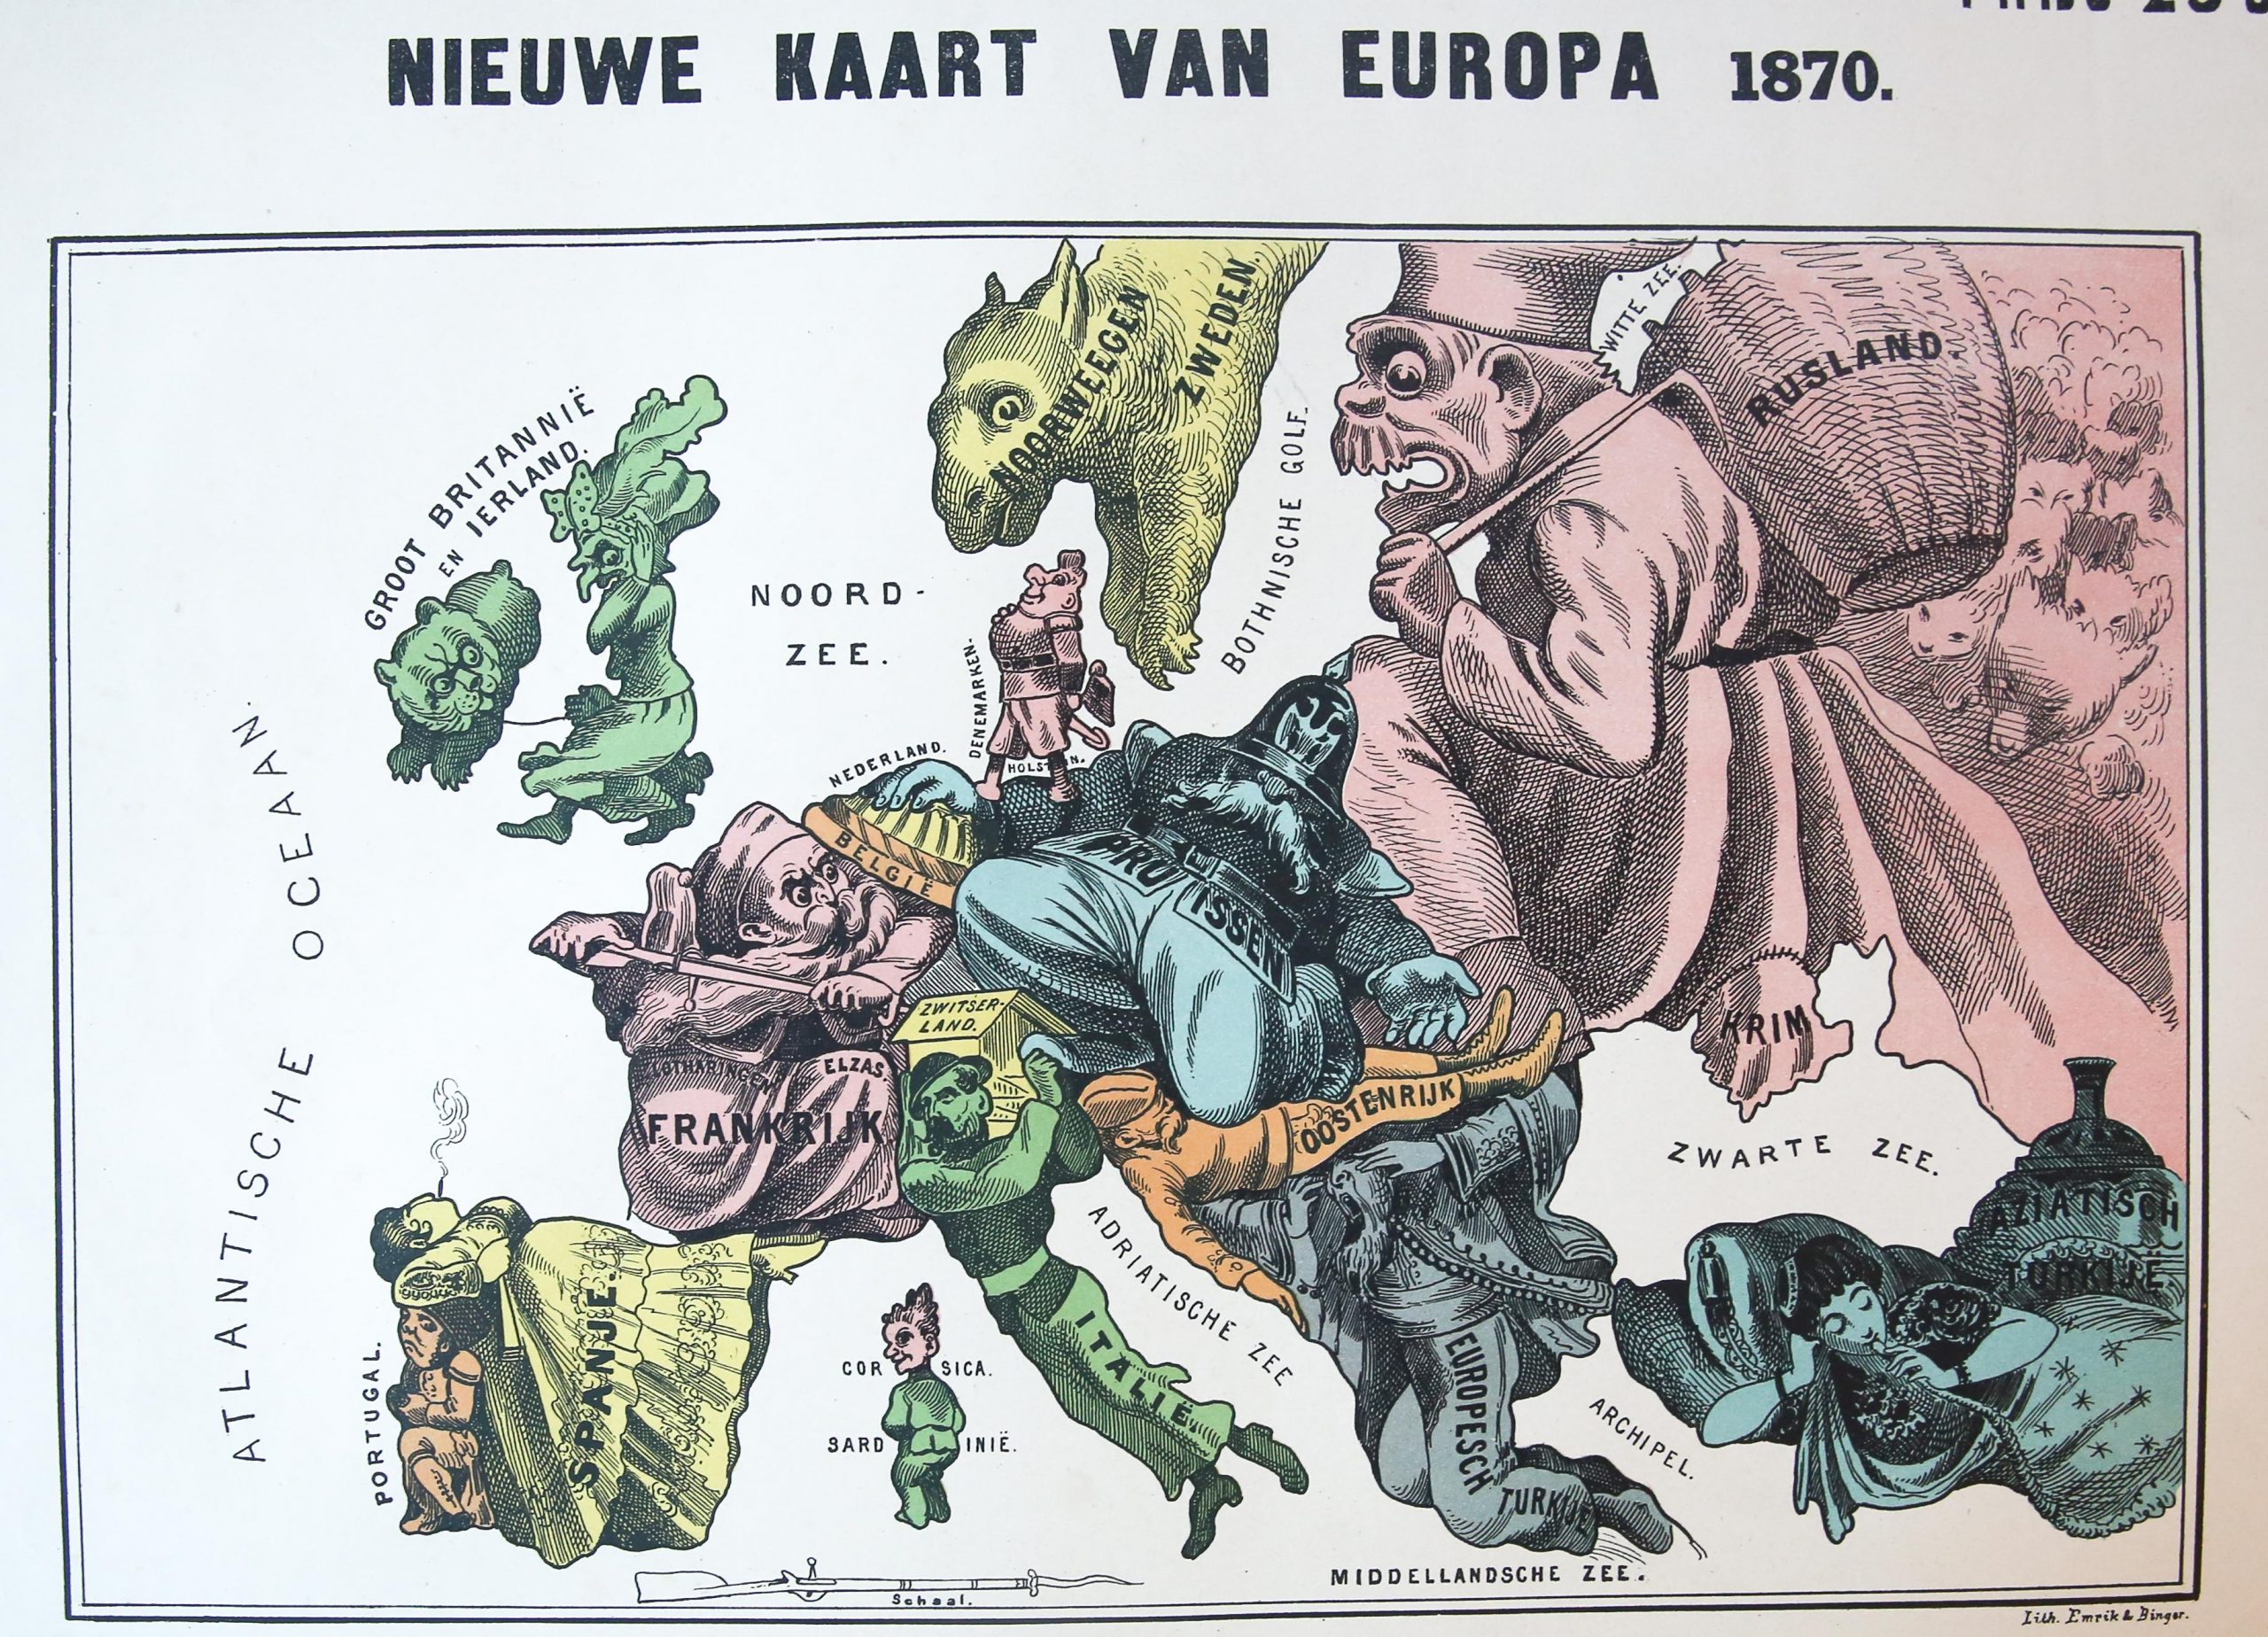 [Caricatural map] - [Caricatural map]: Nieuwe kaart van Europa 1870, colored lithographed map on one leaf, by Emrik & Binger, with text underneath: Engeland, op zich zelf staande, schuimbekt van woede, en vergeet bijna Ierland om, dat het aan den leiband houdt (...).